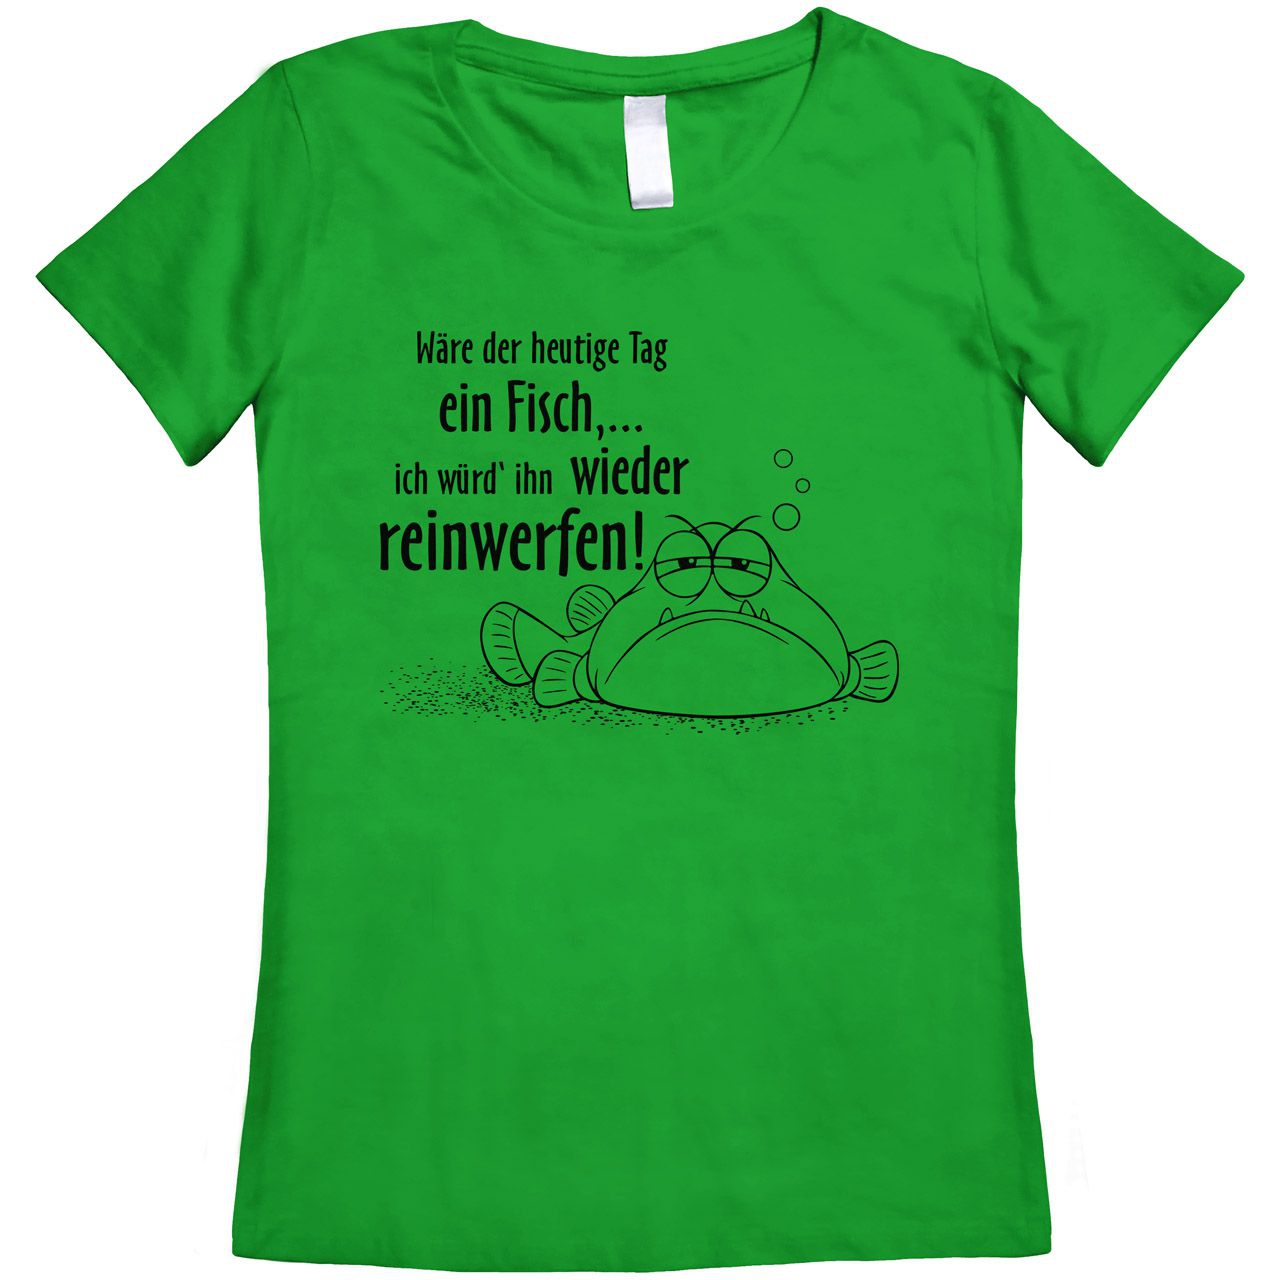 Wäre der heutige Tag ein Fisch Woman T-Shirt grün Medium